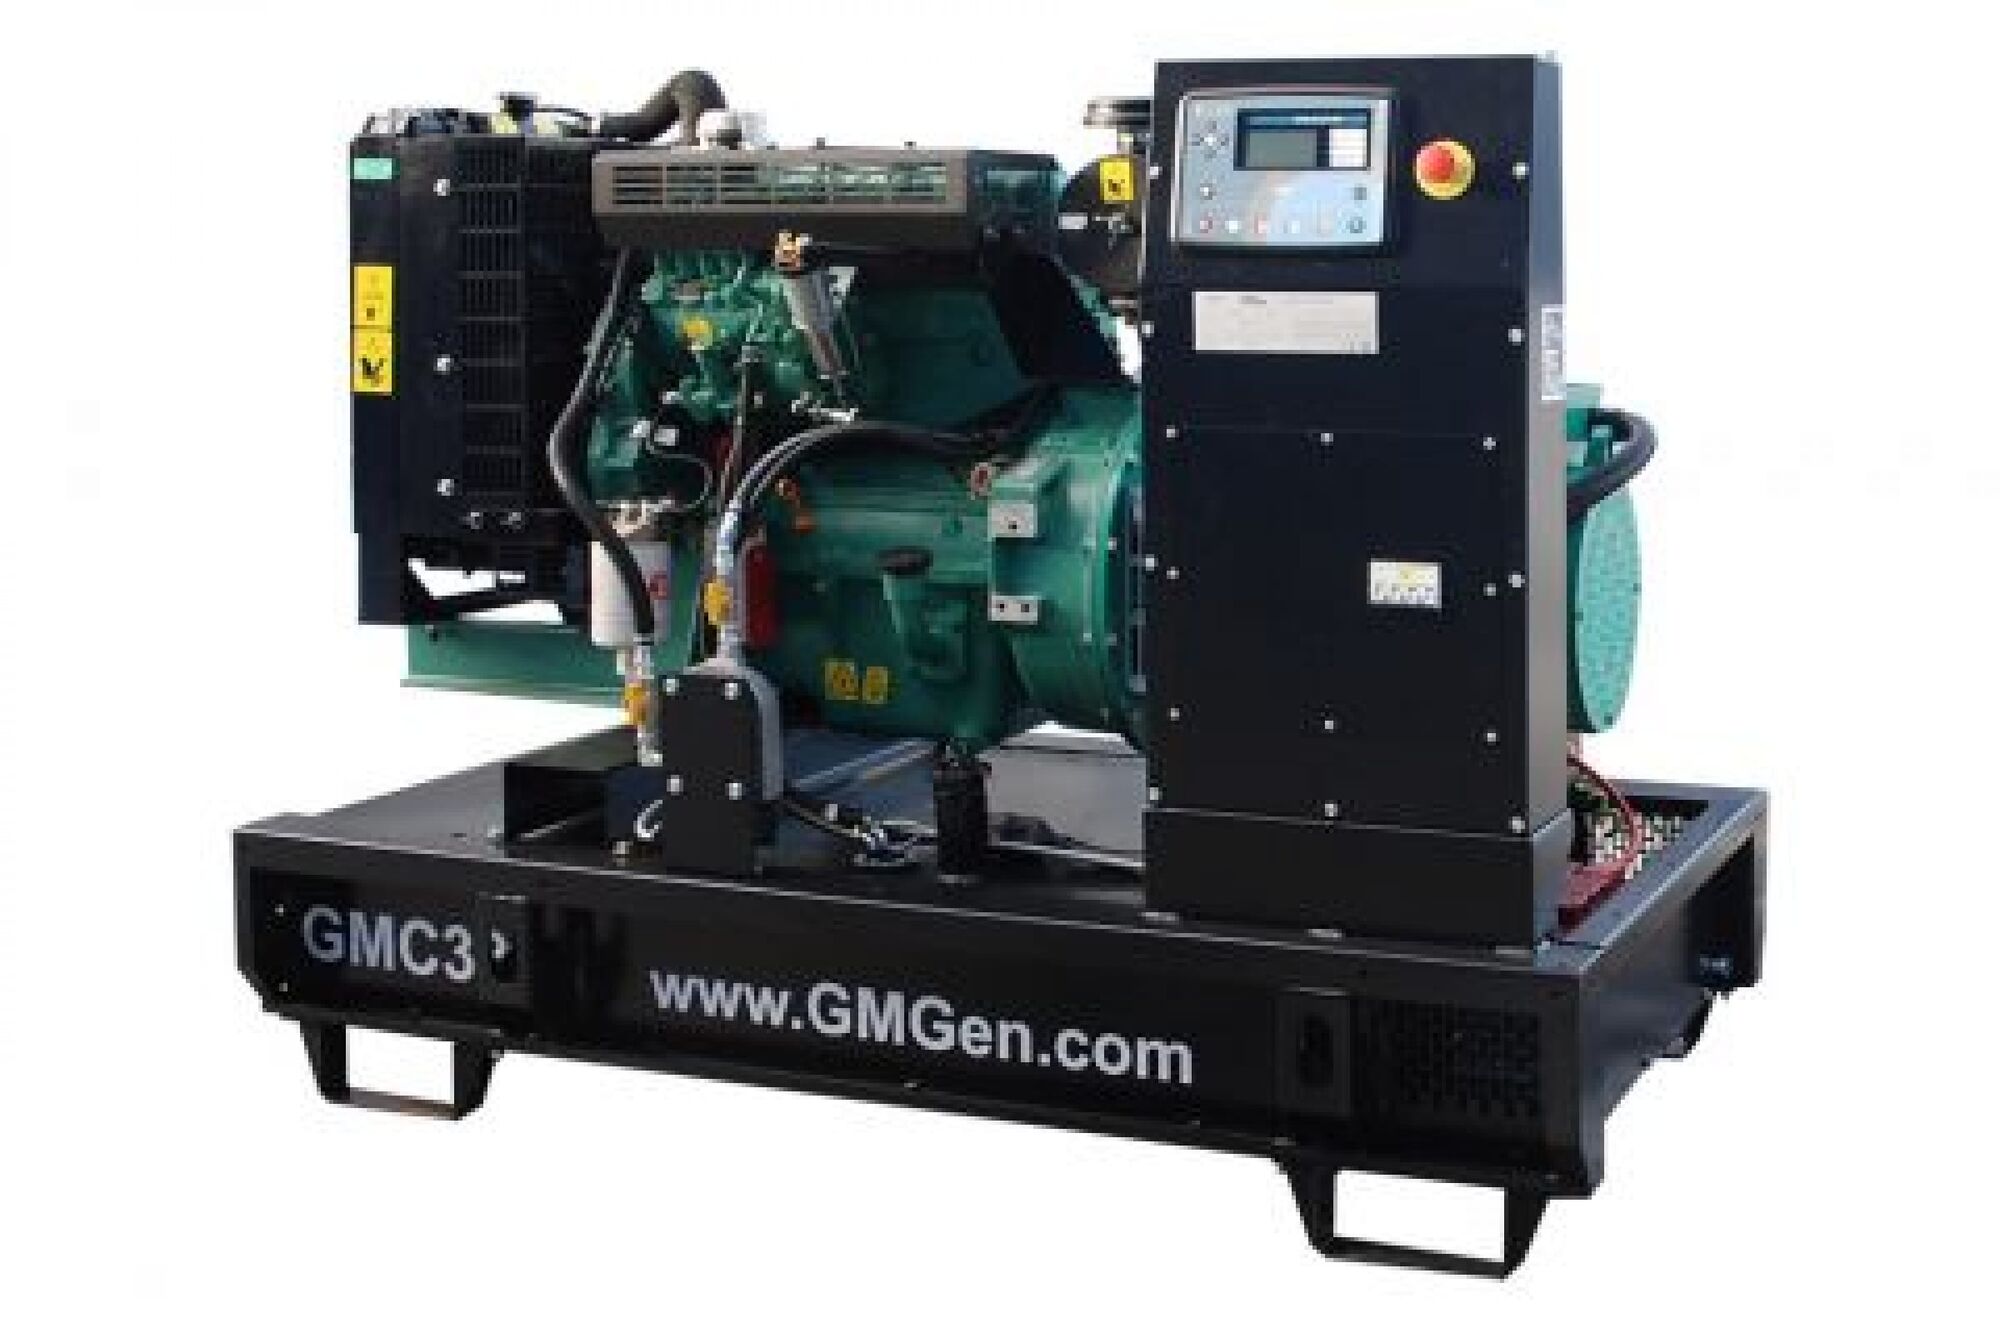 Дизель генератор GMGen Power Systems GMC33 24 кВт, 380/220 В 502072